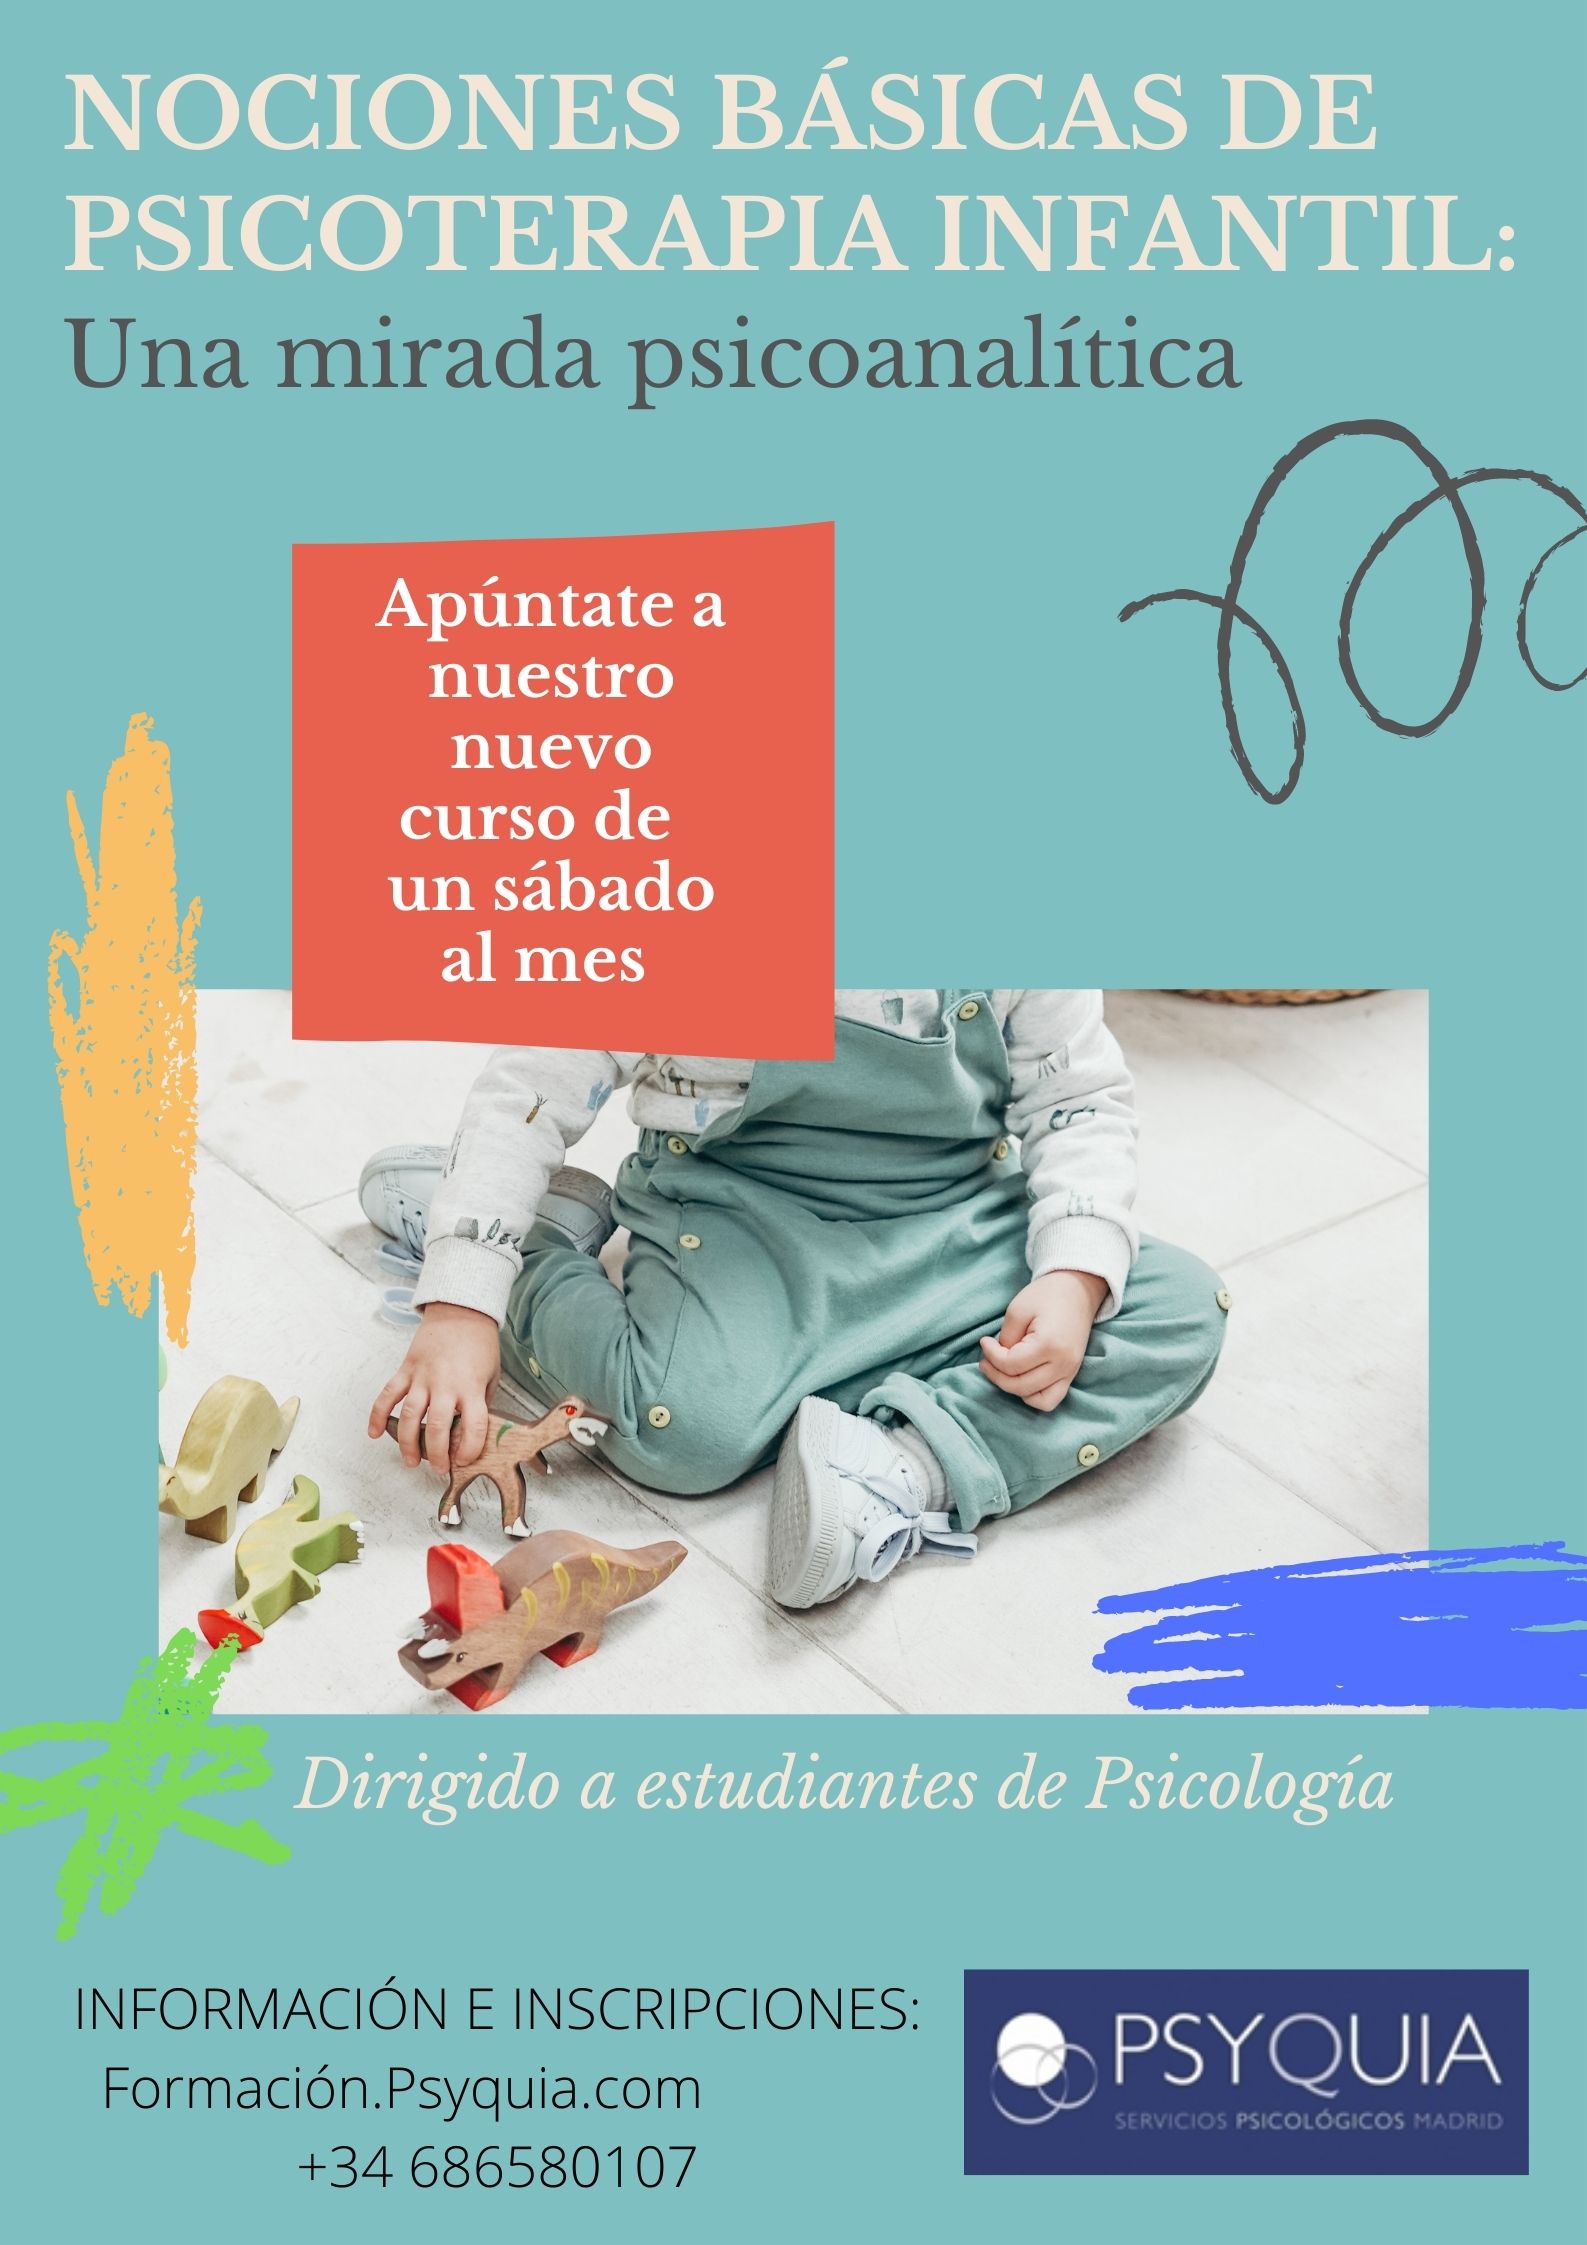 NOCIONES BÁSICAS DE PSICOTERAPIA INFANTIL. UNA MIRADA PSICOANALÍTICA.